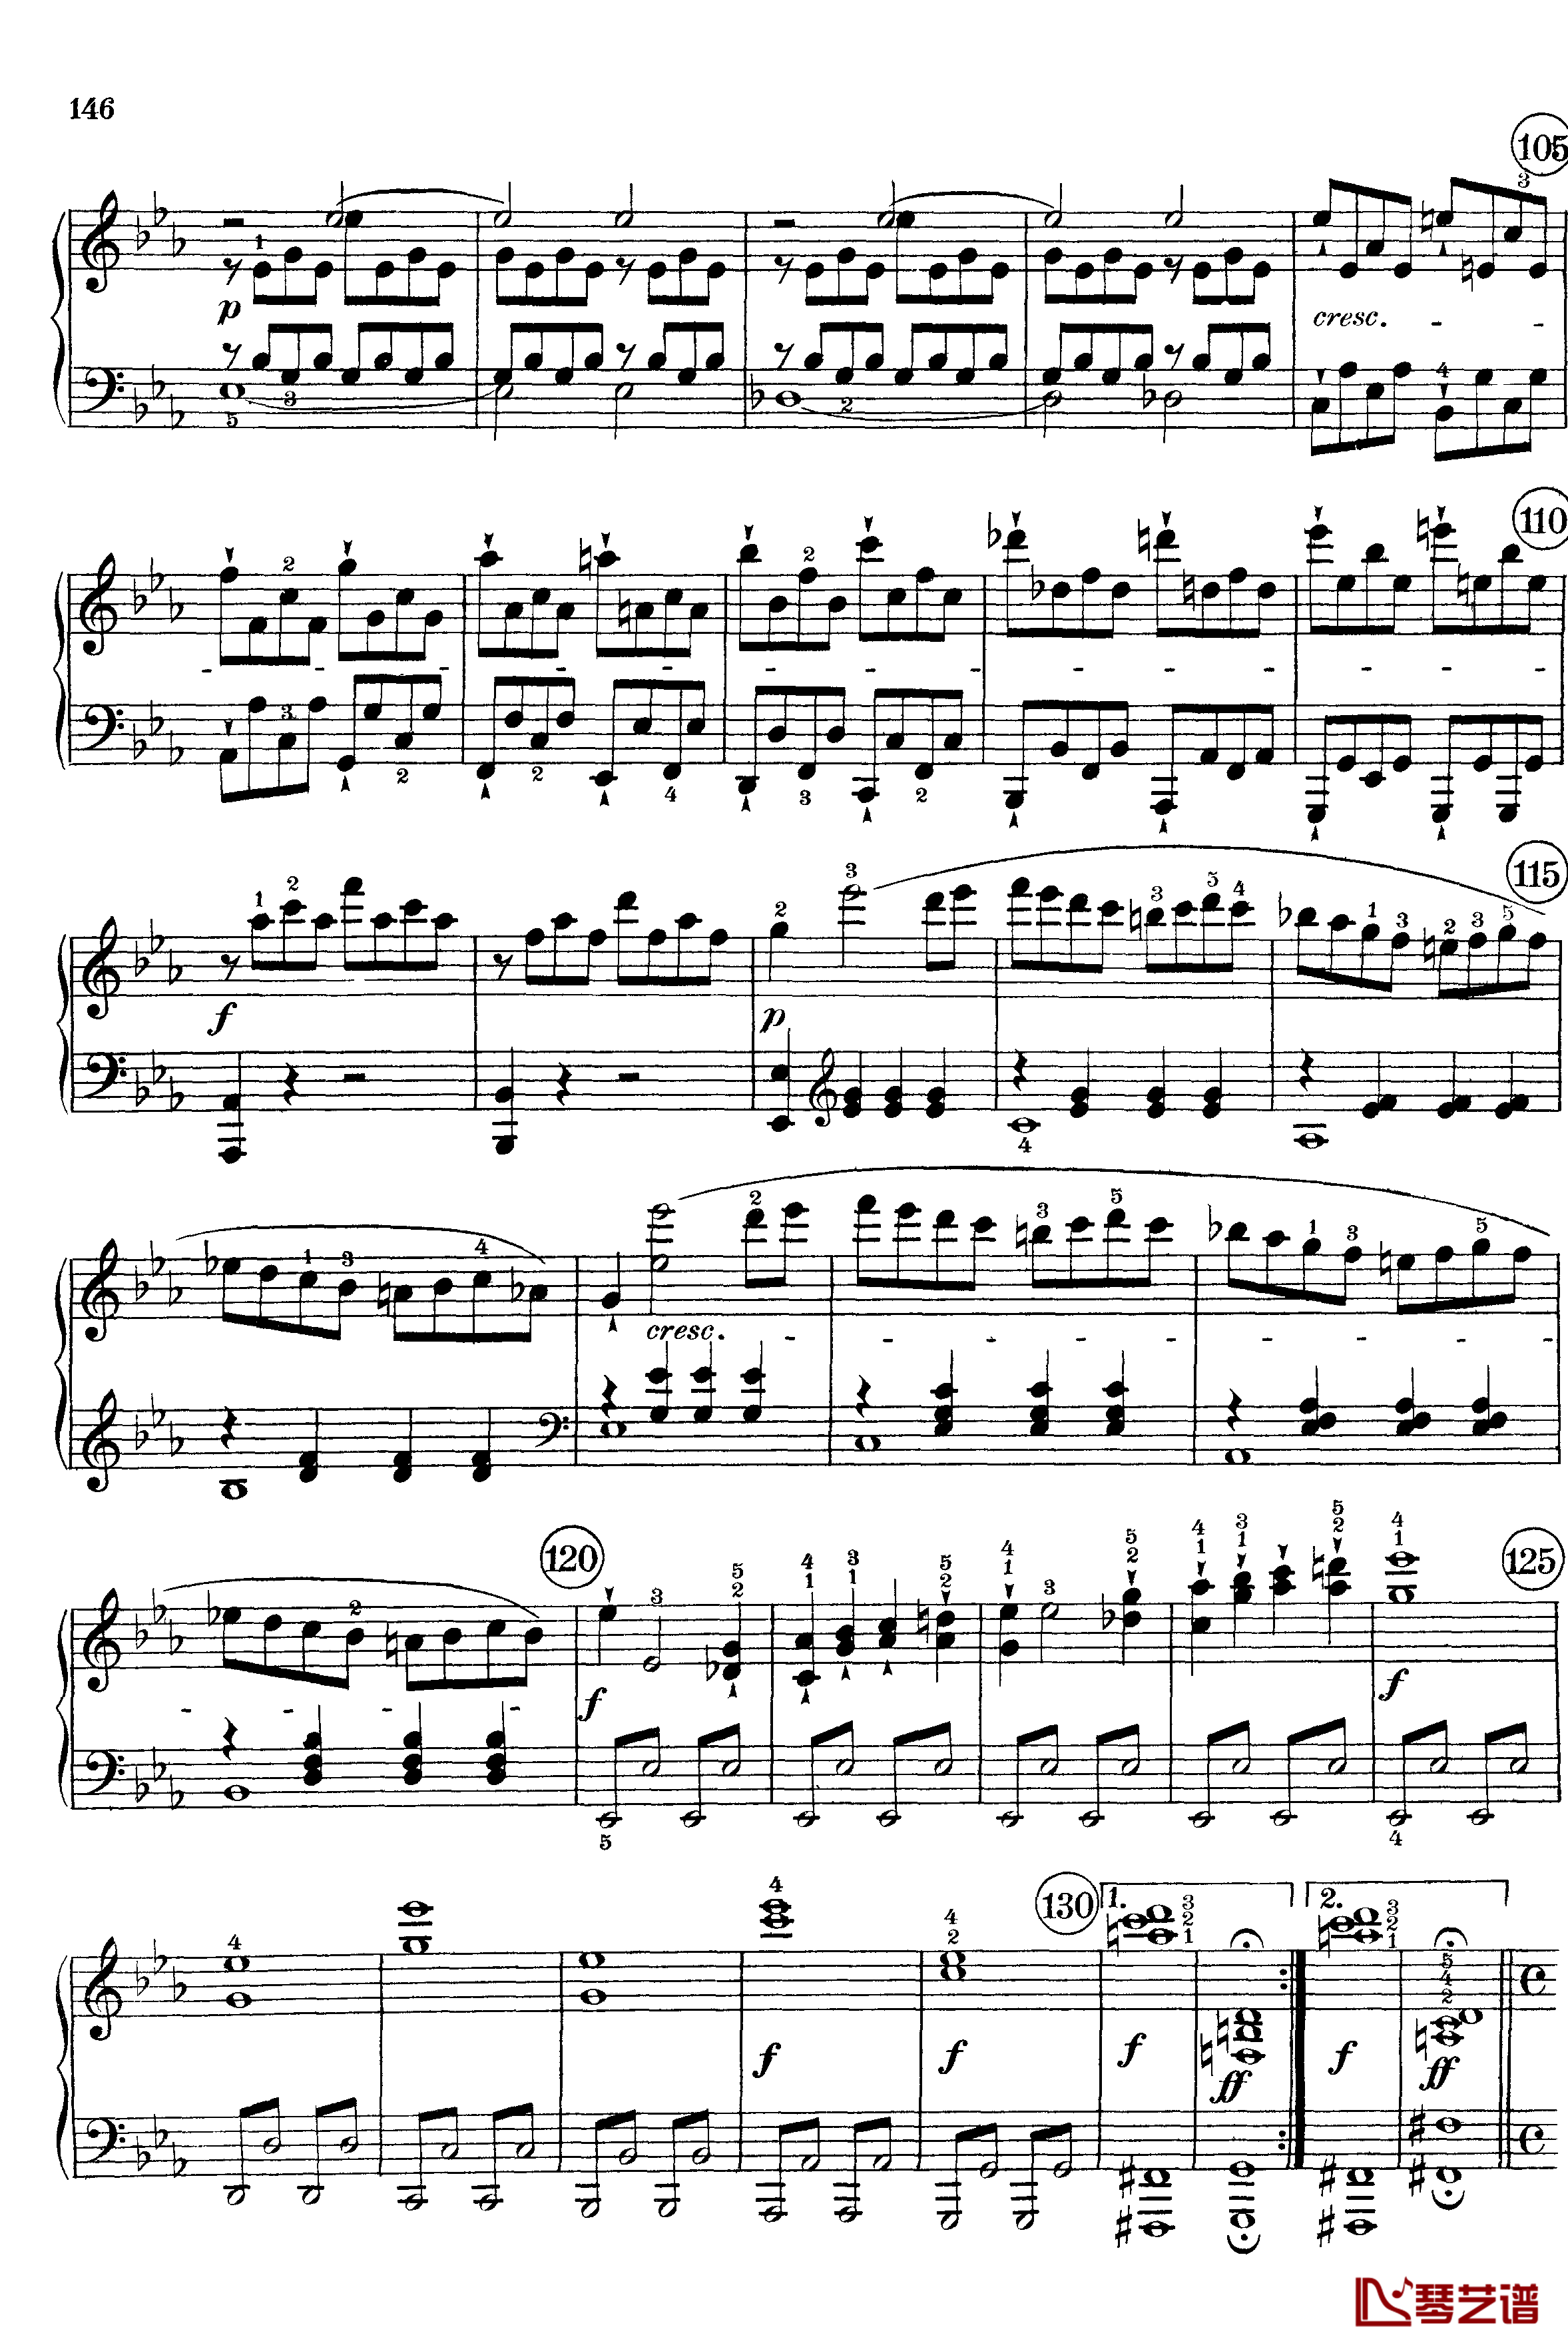 悲怆钢琴谱-c小调第八号钢琴奏鸣曲-全乐章-带指法版-贝多芬-beethoven4